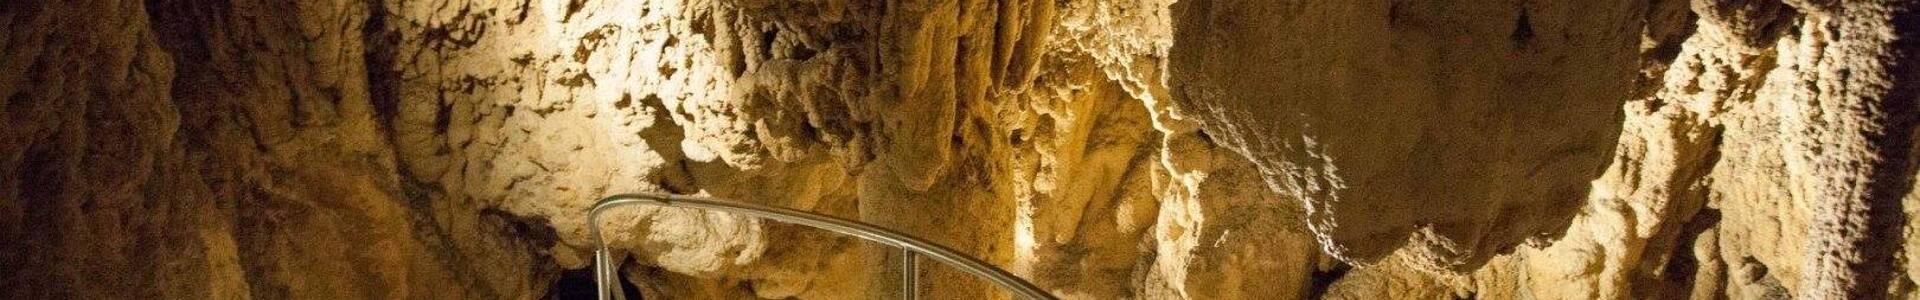 Téli nyitvatartás szerint látogathatók a lillafüredi barlangok